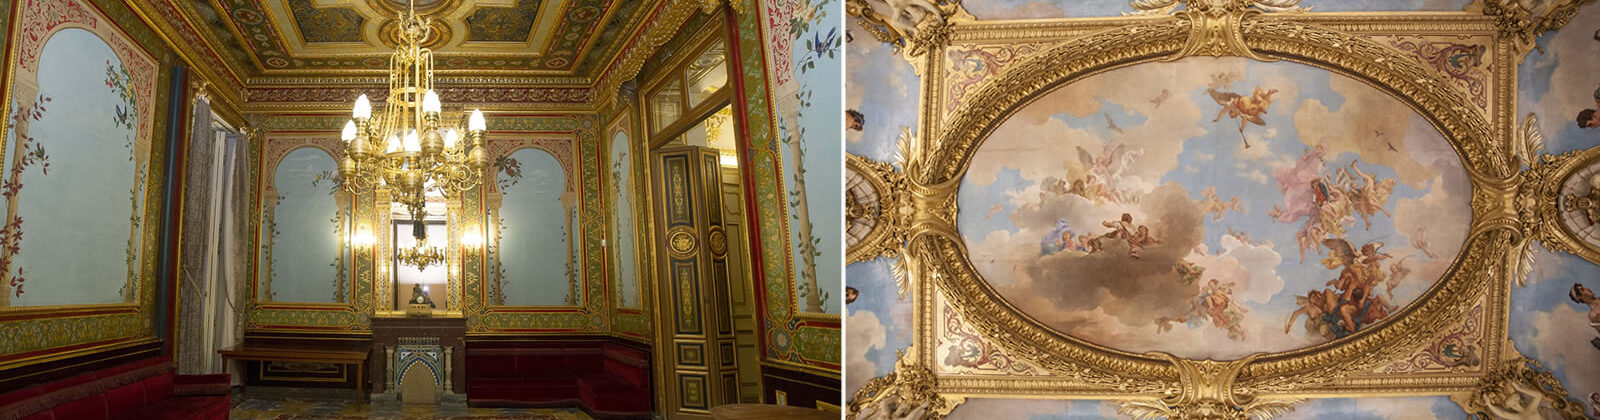 Vistas del interior del Palacio de Santoña, en concreto del salón y de su formifable techo con murales pintados.